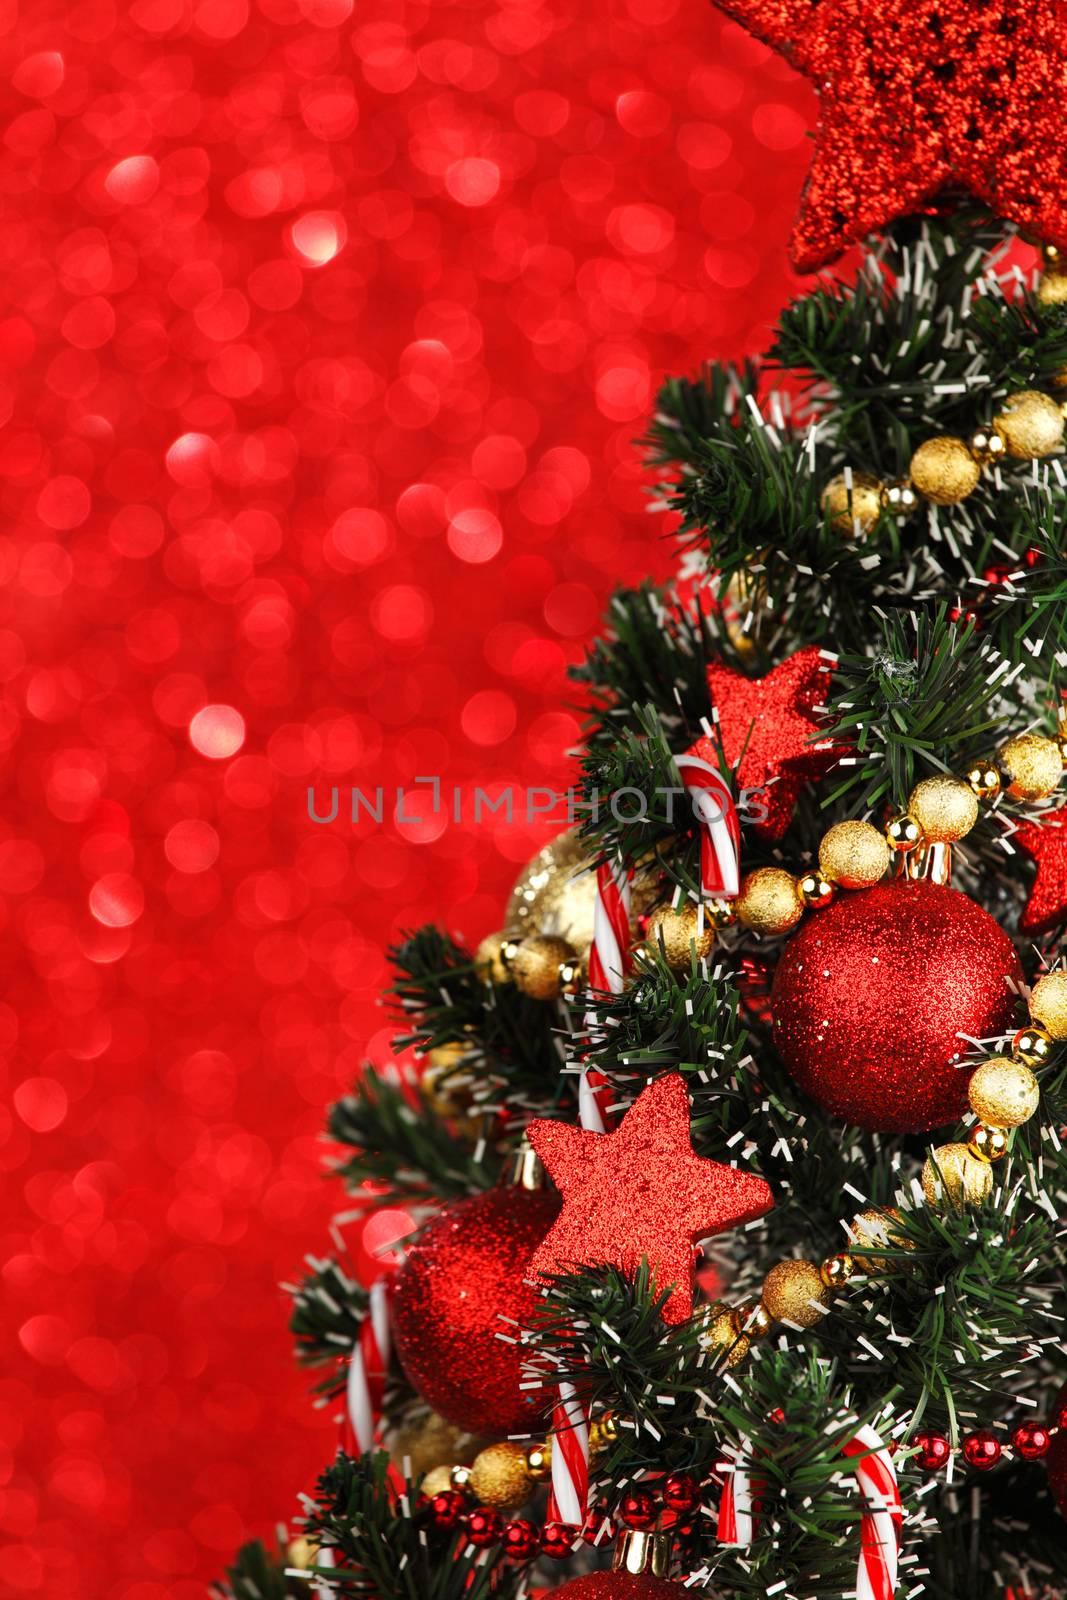 Christmas tree by Yellowj